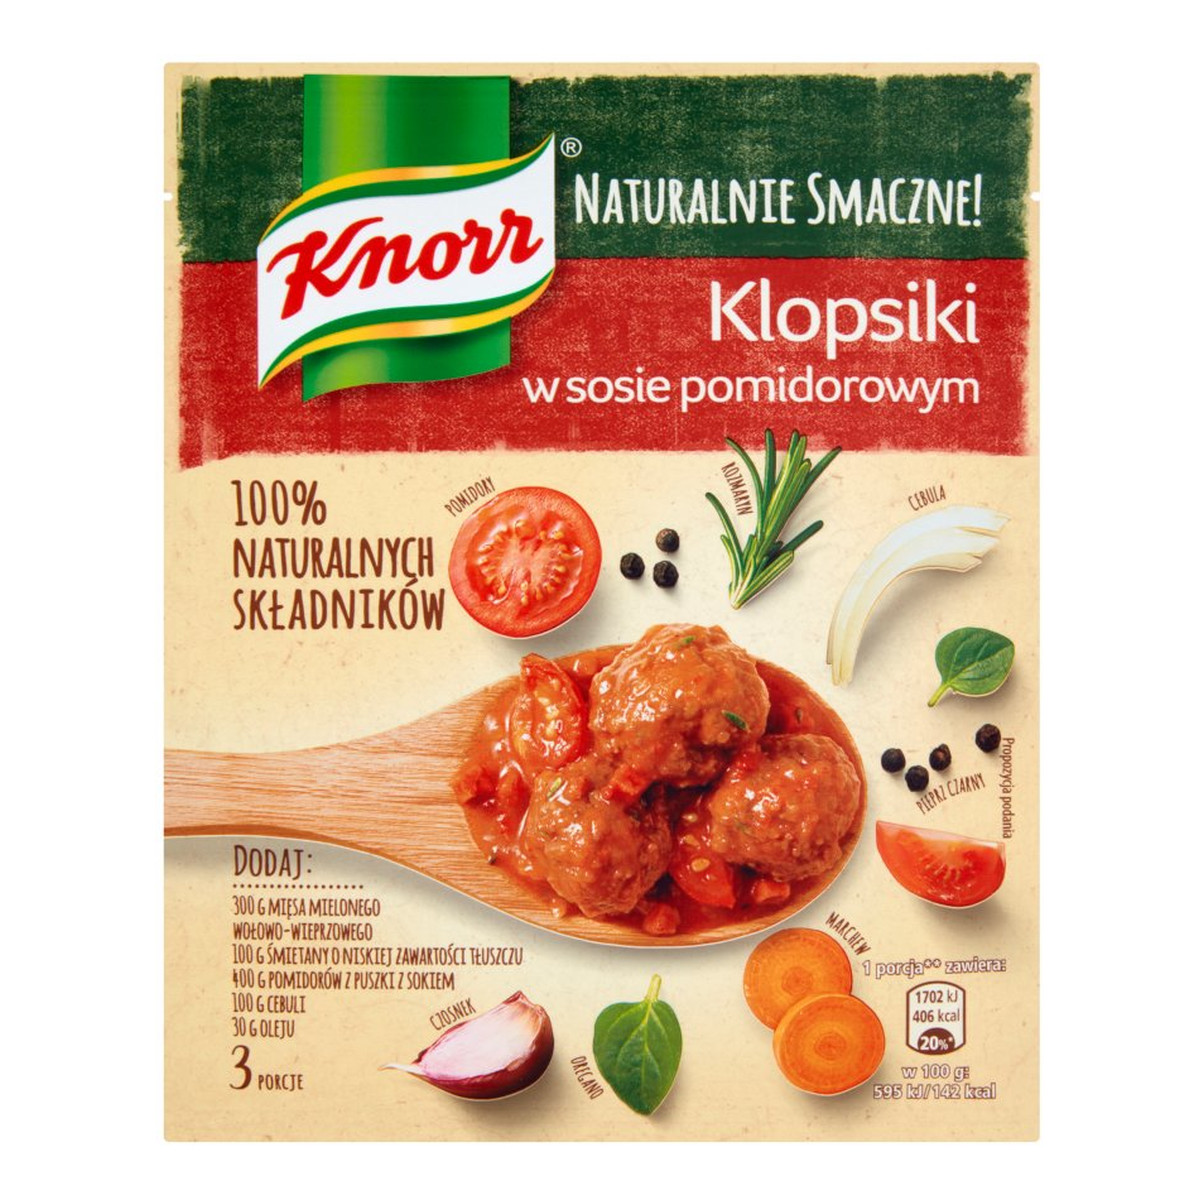 Knorr Naturalnie Smacznie! klopsiki w sosie pomidorowym 43g